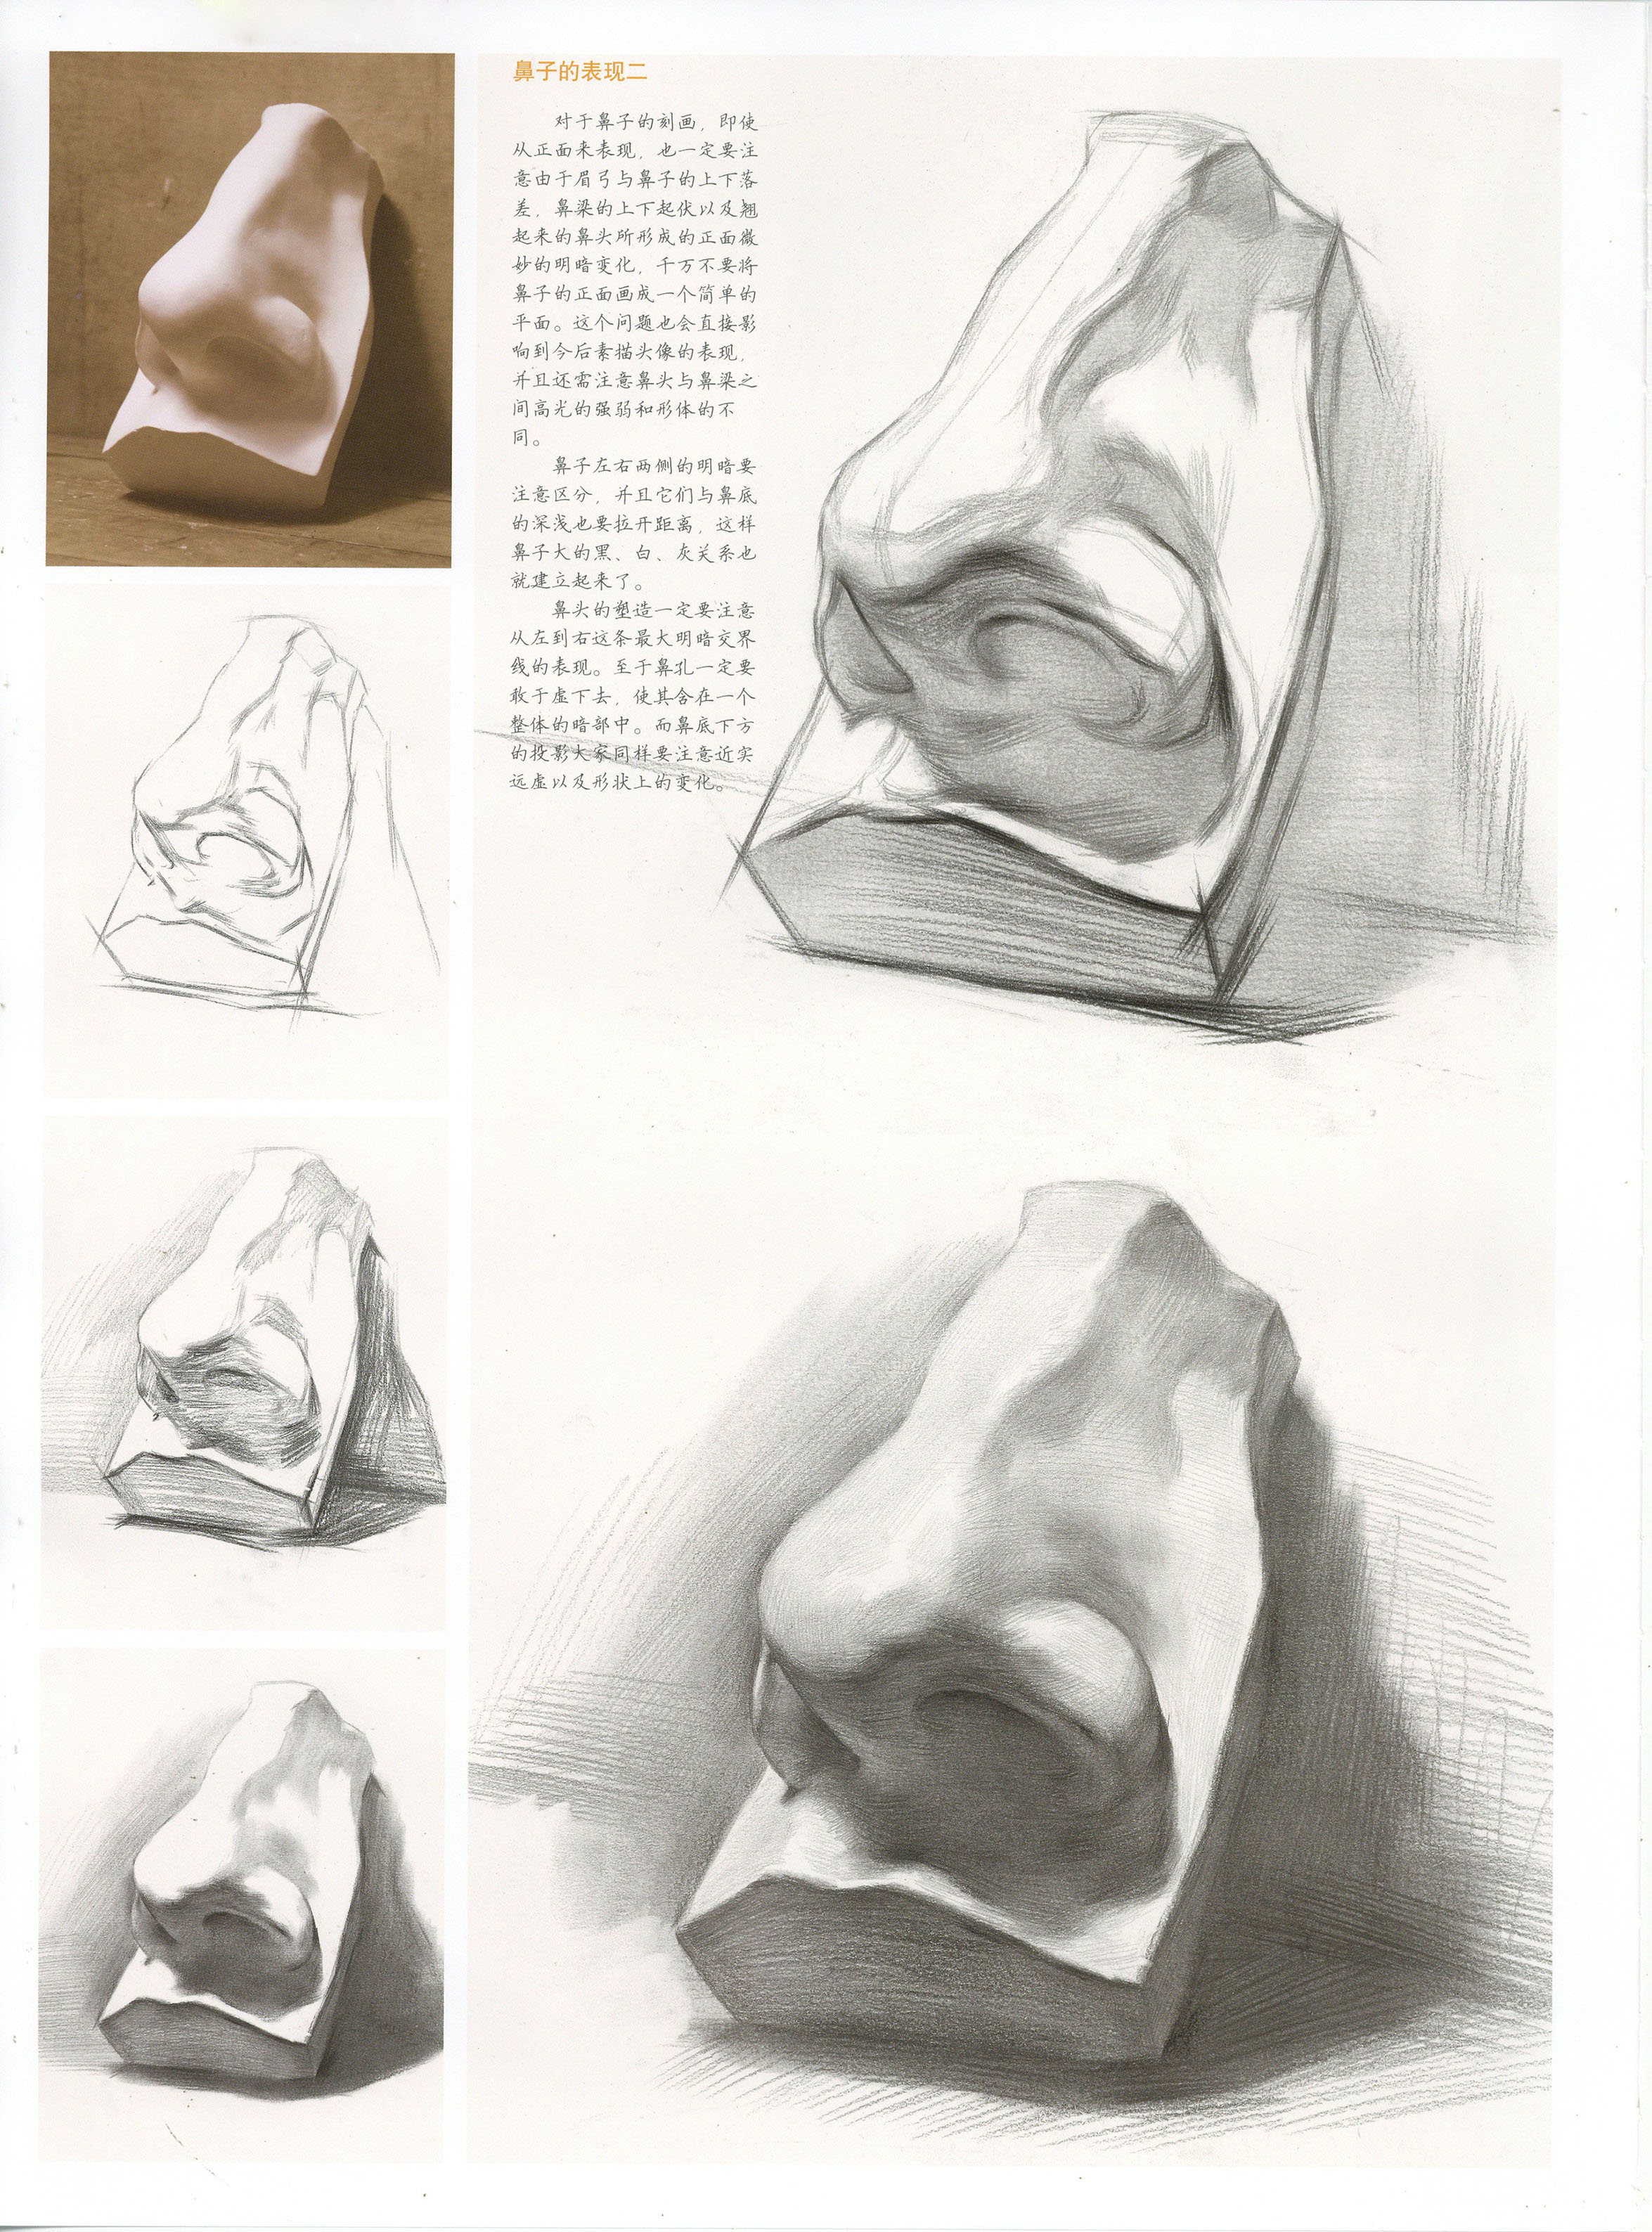 石膏鼻子素描画法步骤图片 鼻子画法教程